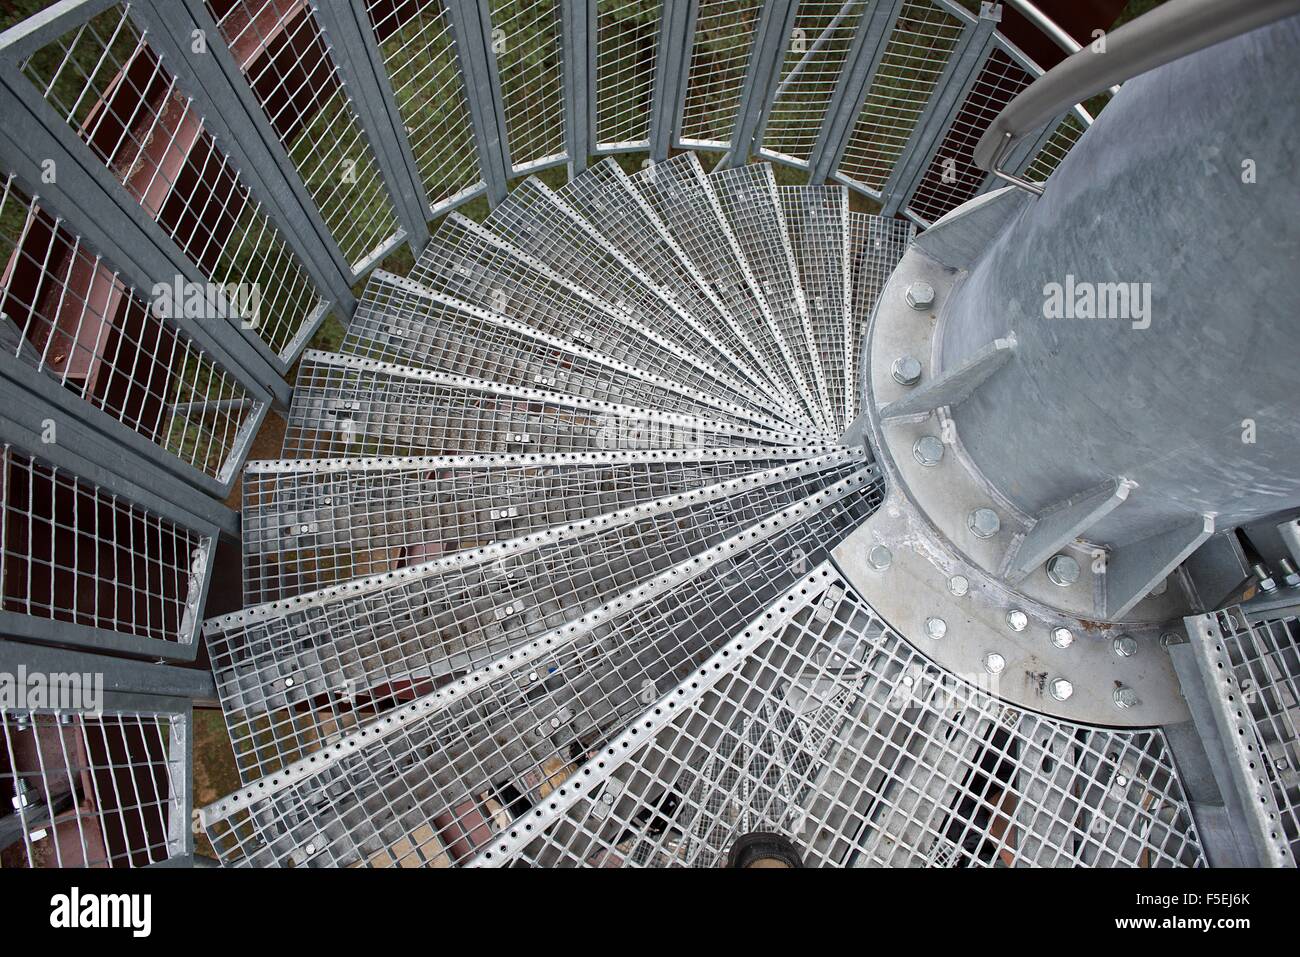 Persönlichen Perspektive einer Metallspirale Treppe Stockfoto